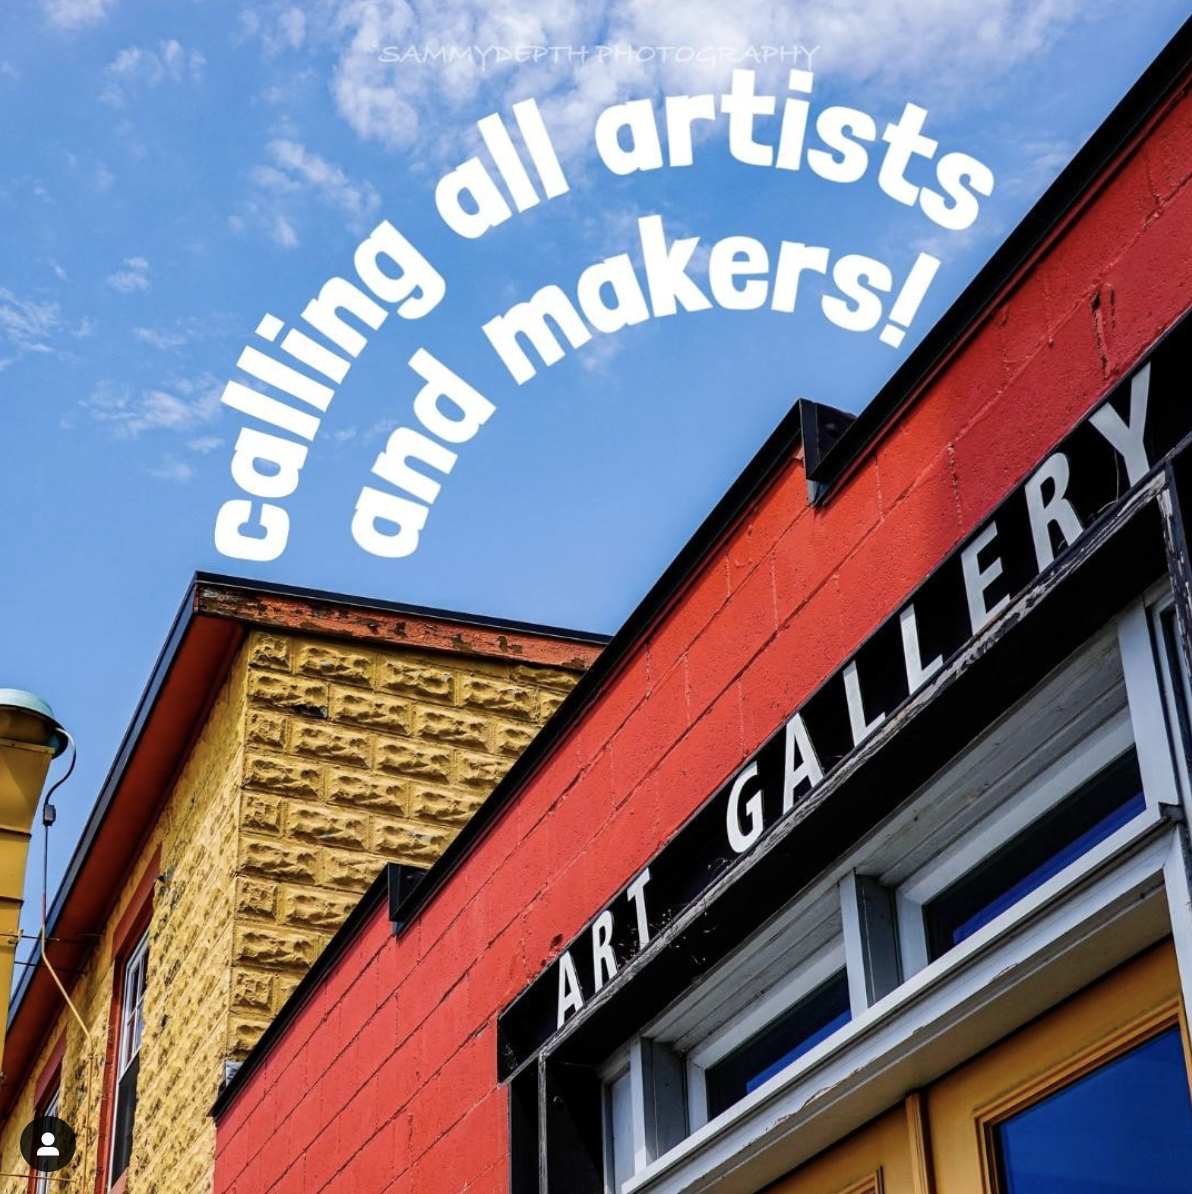 Love Burlington launches Artist & Makers registry!